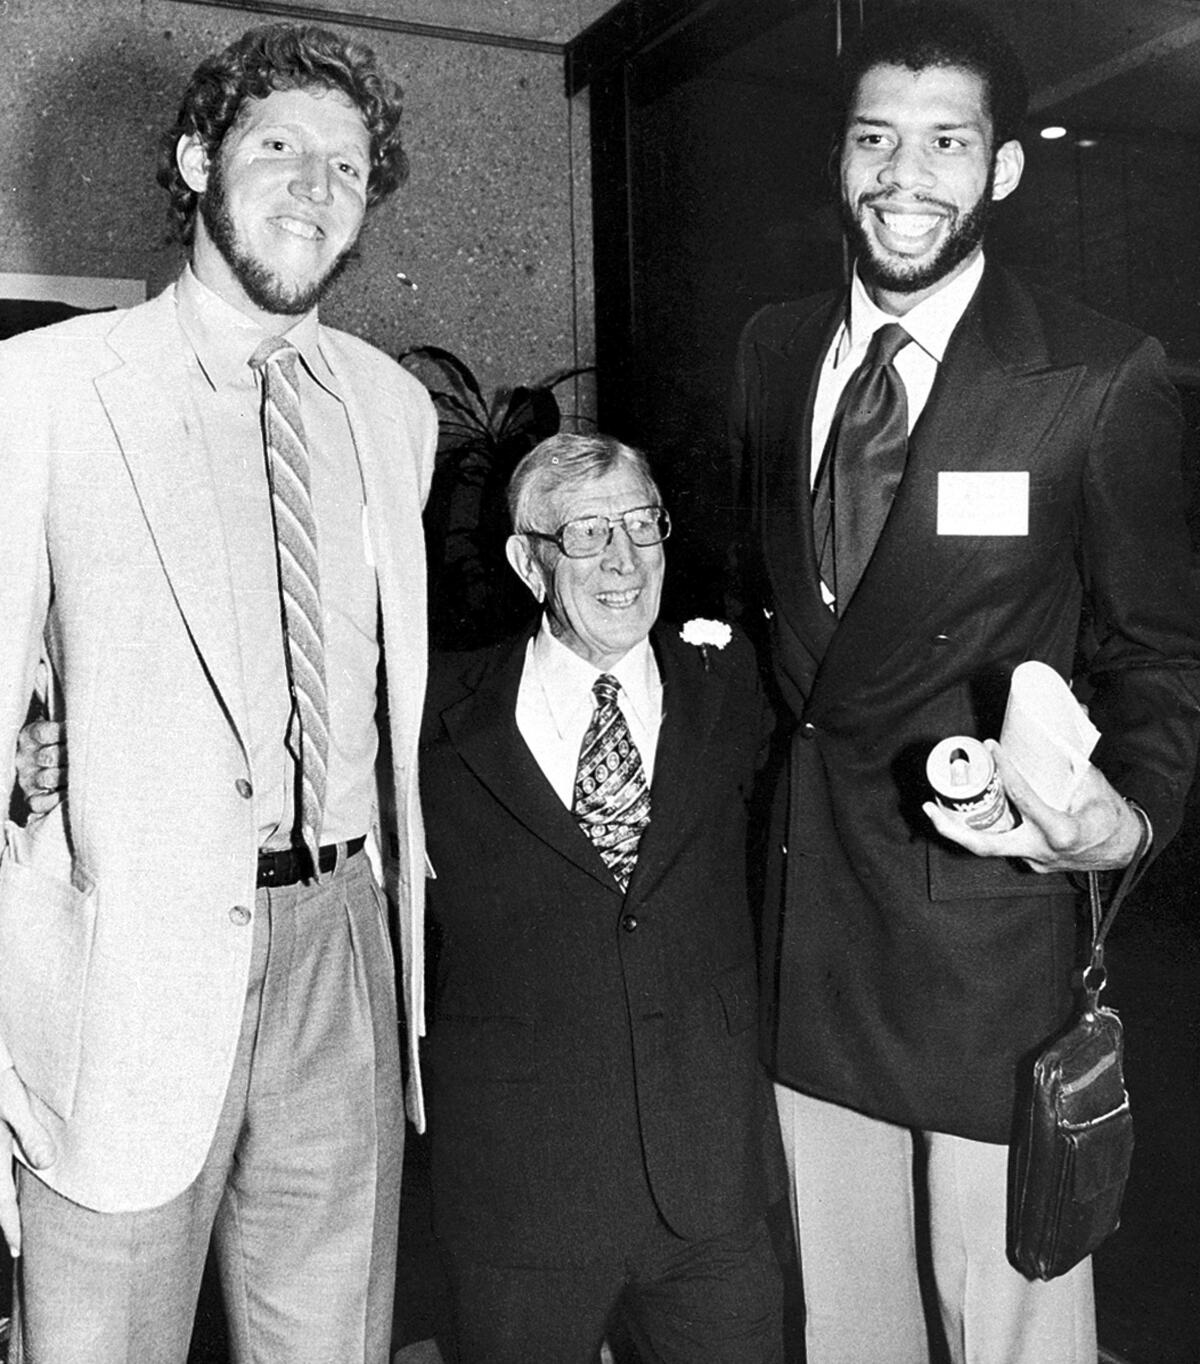 元UCLAコーチのジョン・ウッデンの両脇にはスター選手のビル・ウォルトンとカリーム・アブドゥル＝ジャバーがいる 